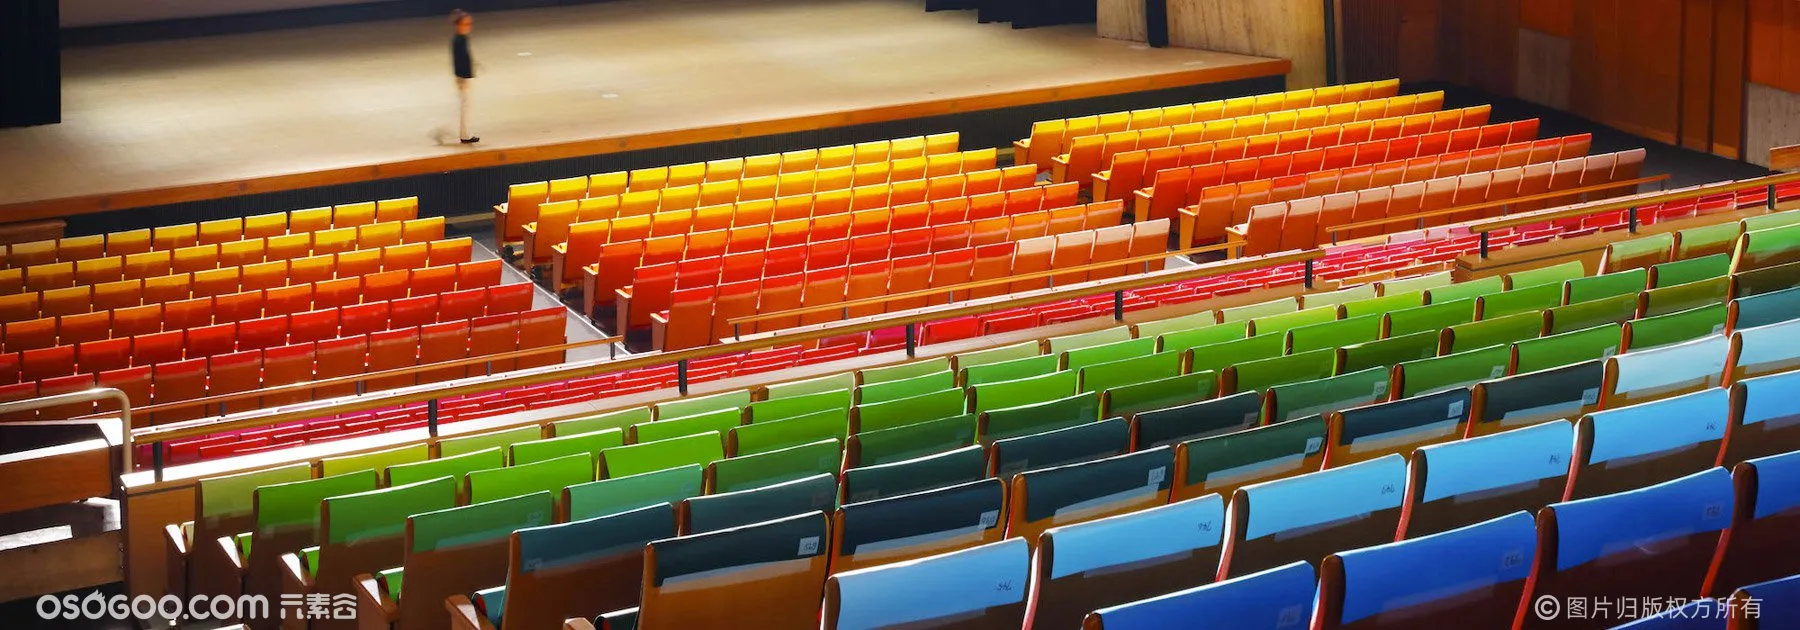 超震撼礼堂 1000个座椅1000种色彩